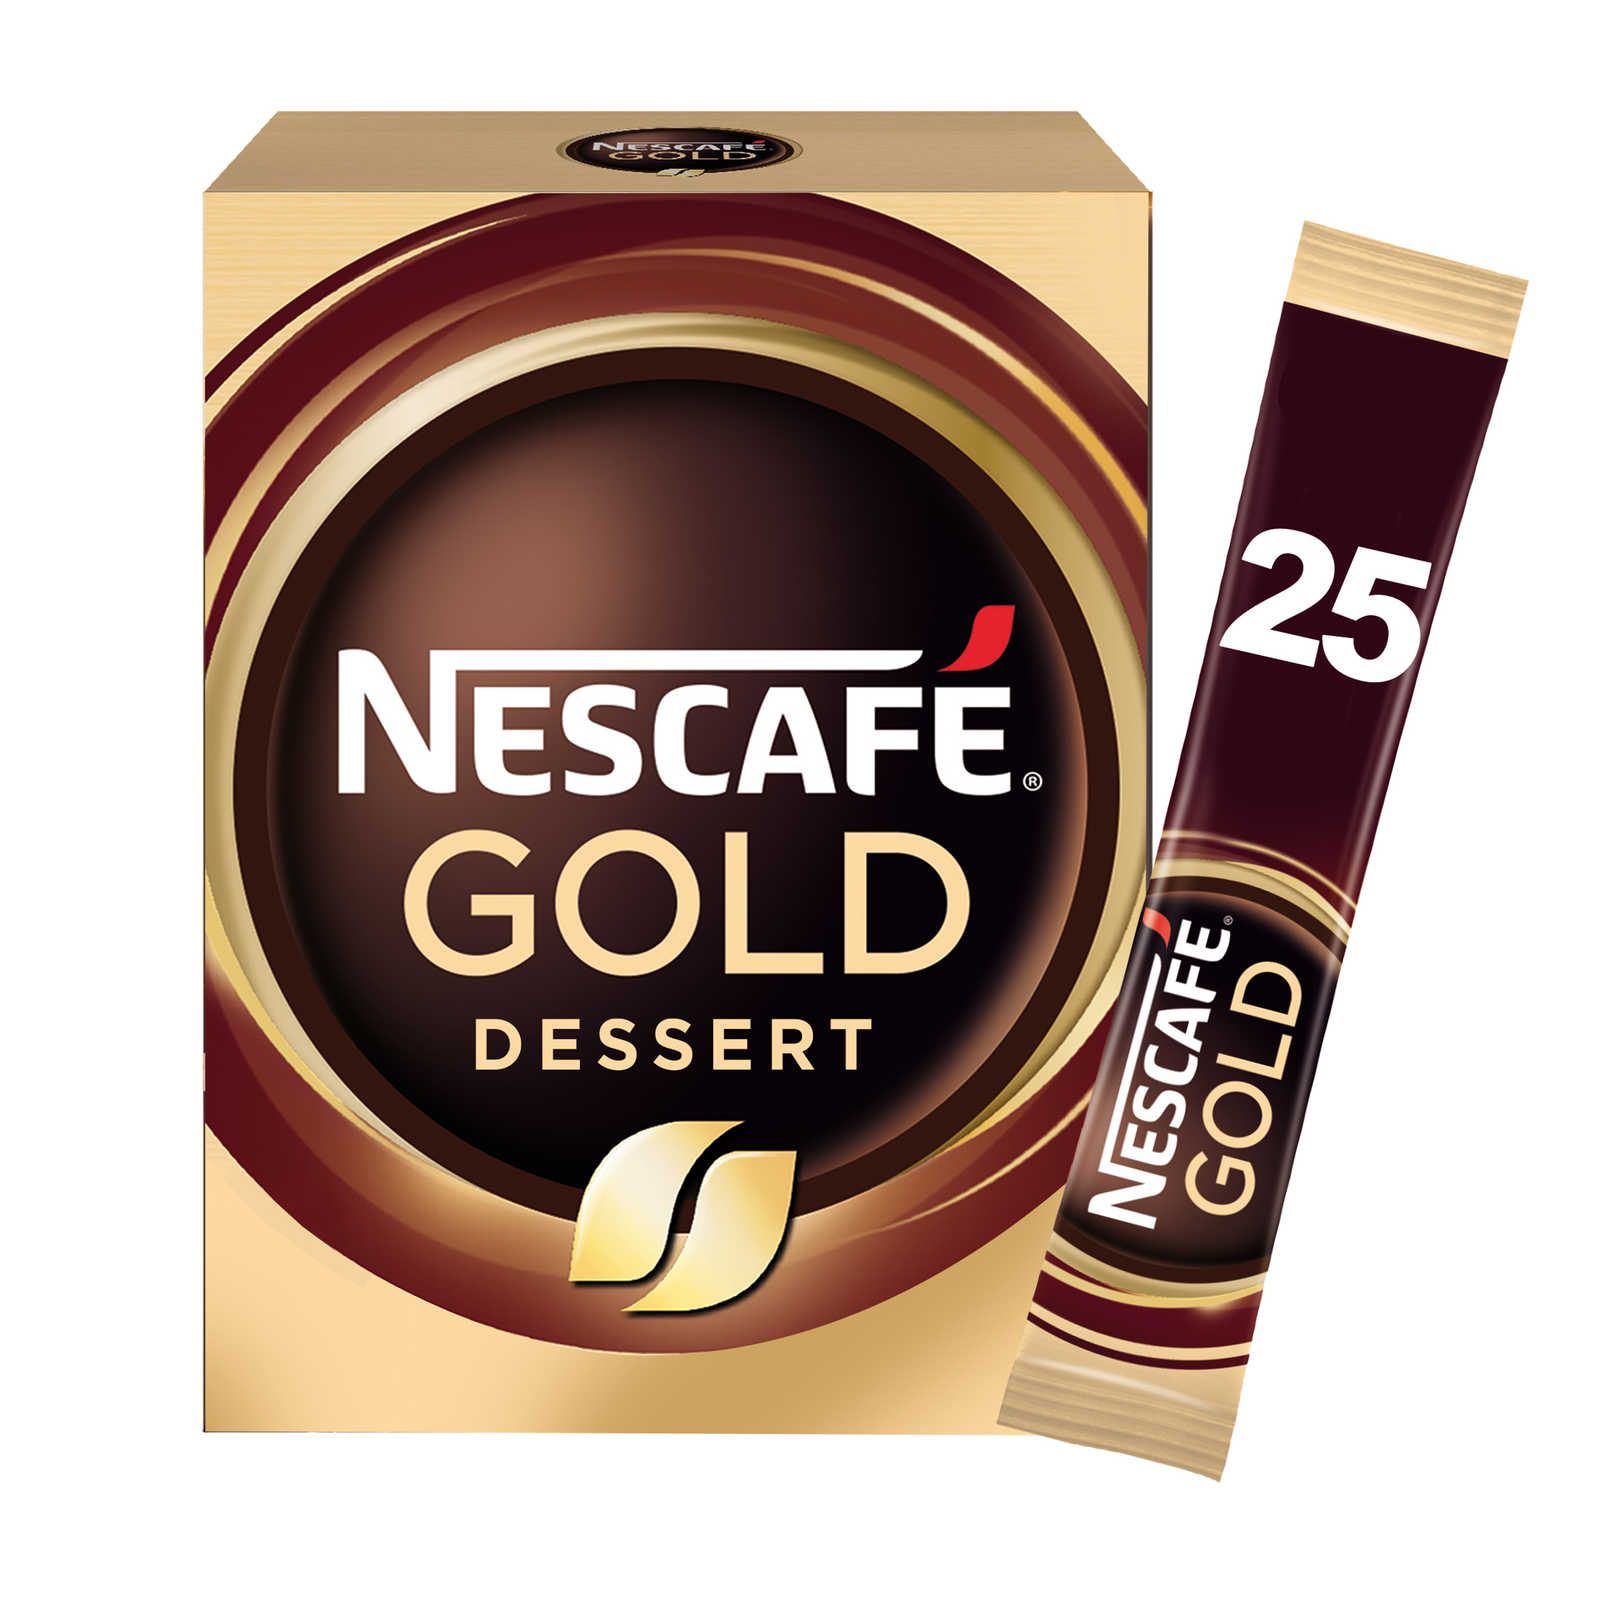 Nescafé, Café, Dessert, Sticks solubles, 25 x 2 gr